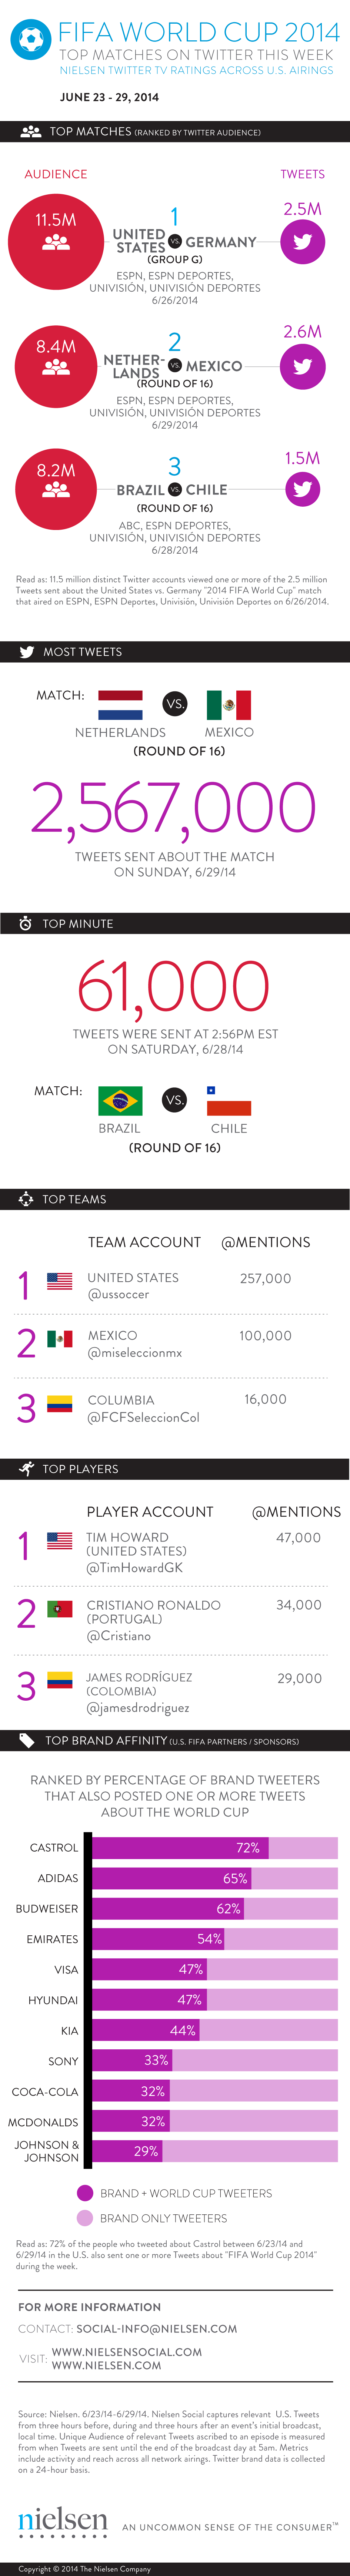 coupe du monde 2014 : tableau de bord social mobile